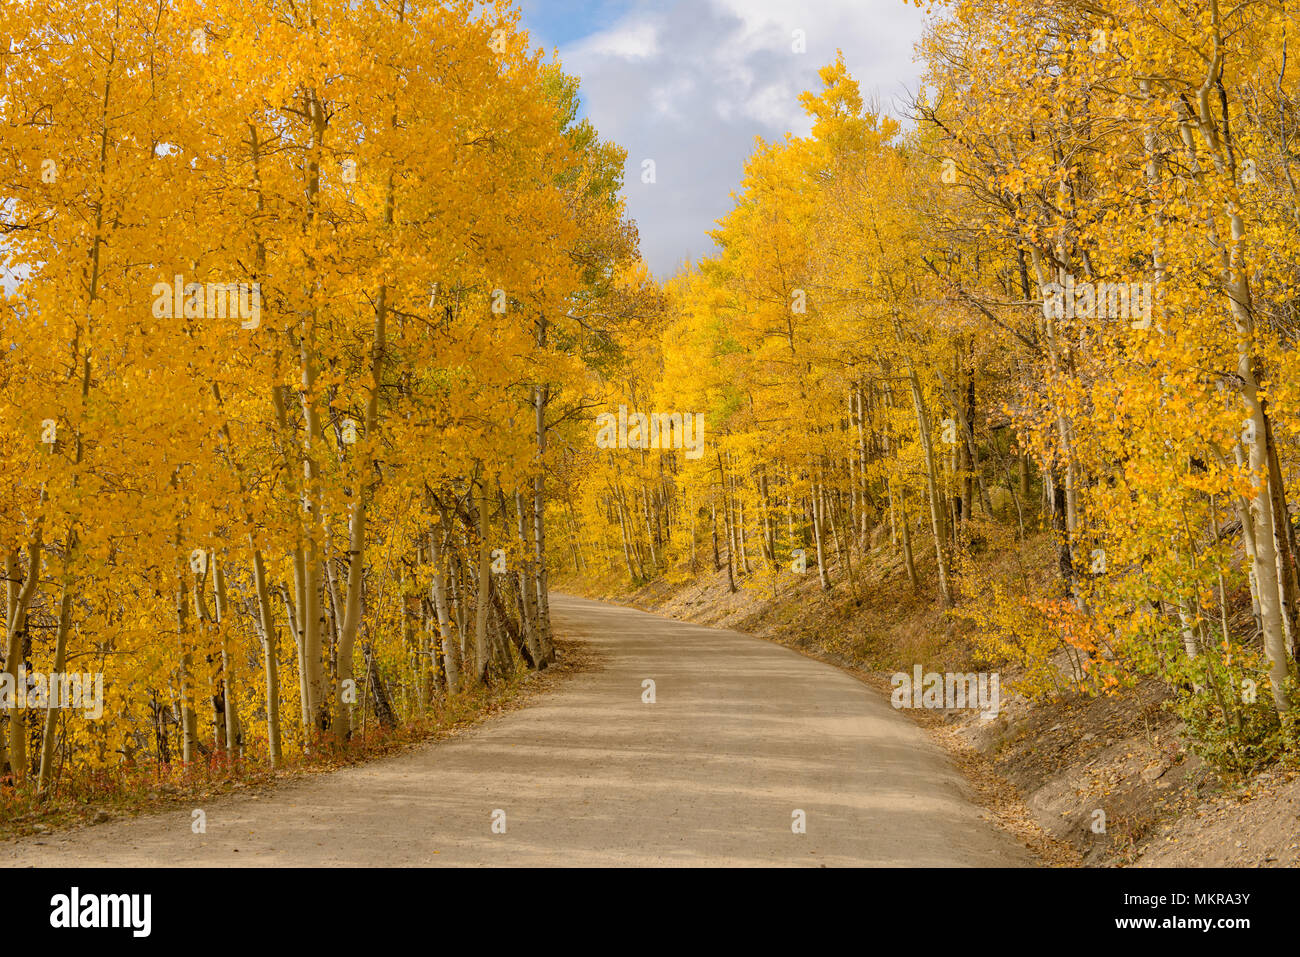 Aspen Grove - Die Sonne scheint auf einem unbefestigten Mountain Road, schlängelt sich durch ein dichtes Aspen Grove im goldenen Herbst von Colorado, Boreas, CO, USA. Stockfoto